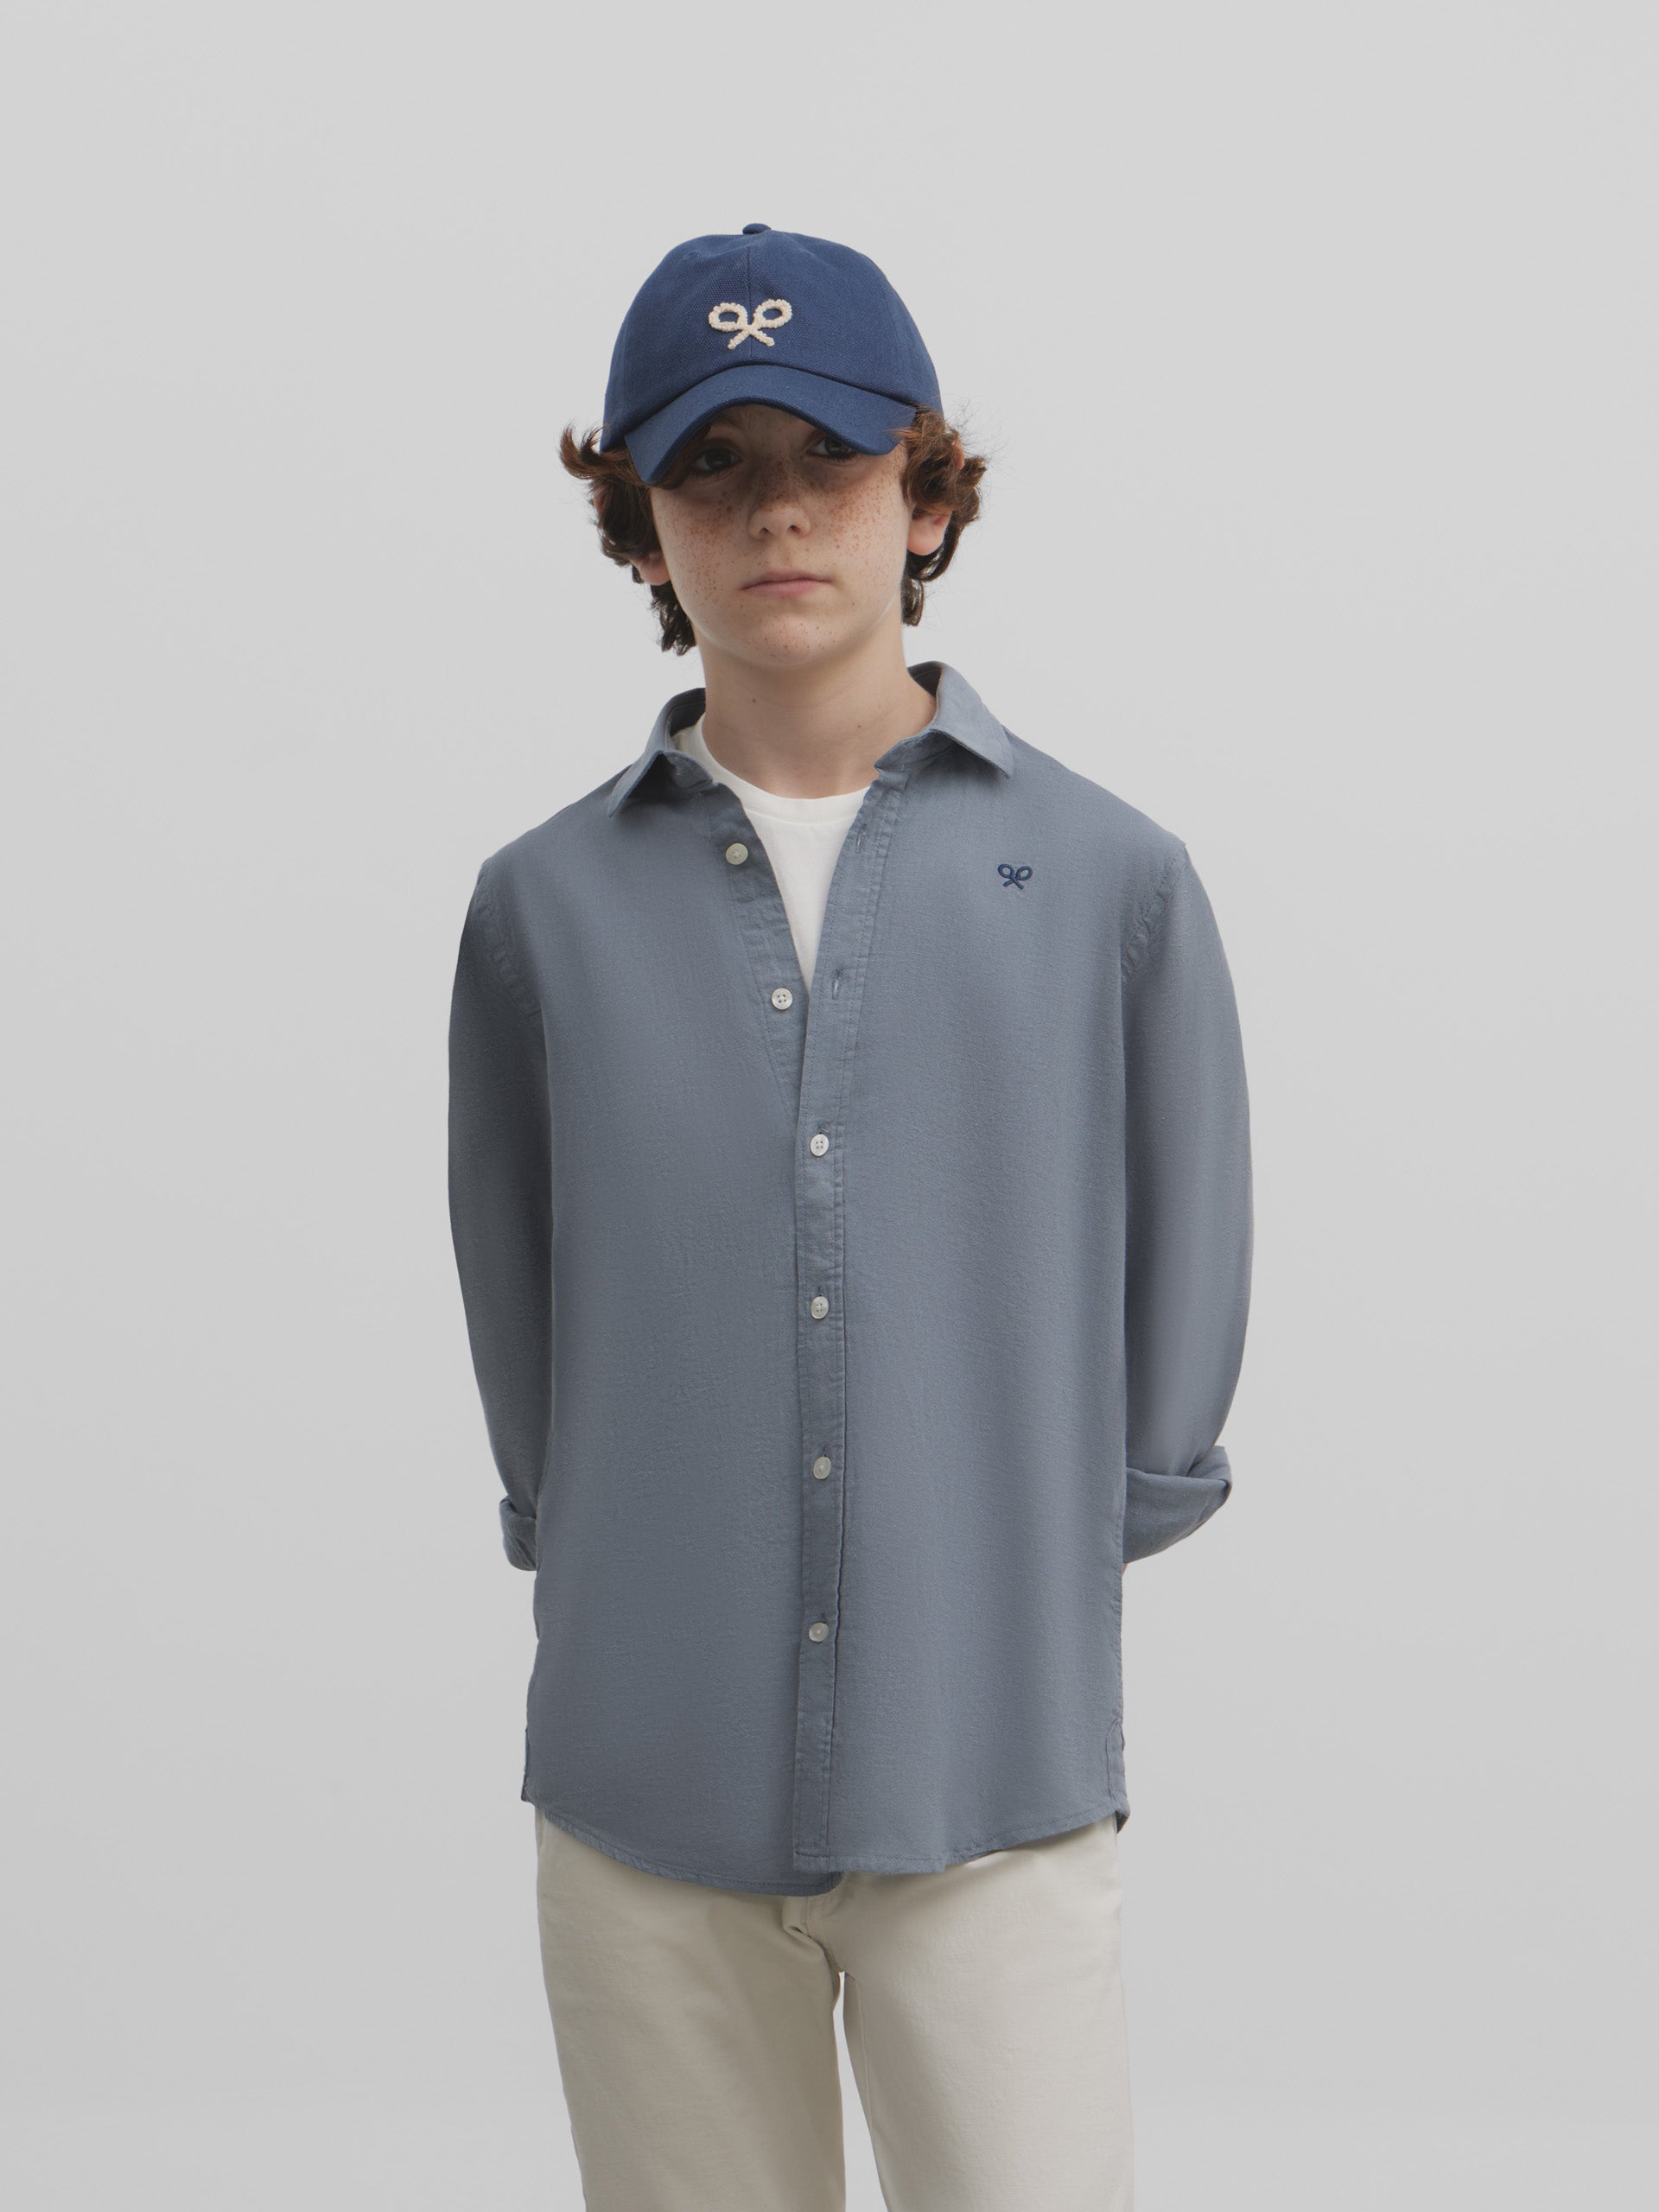 Soft blue gray kids sport shirt